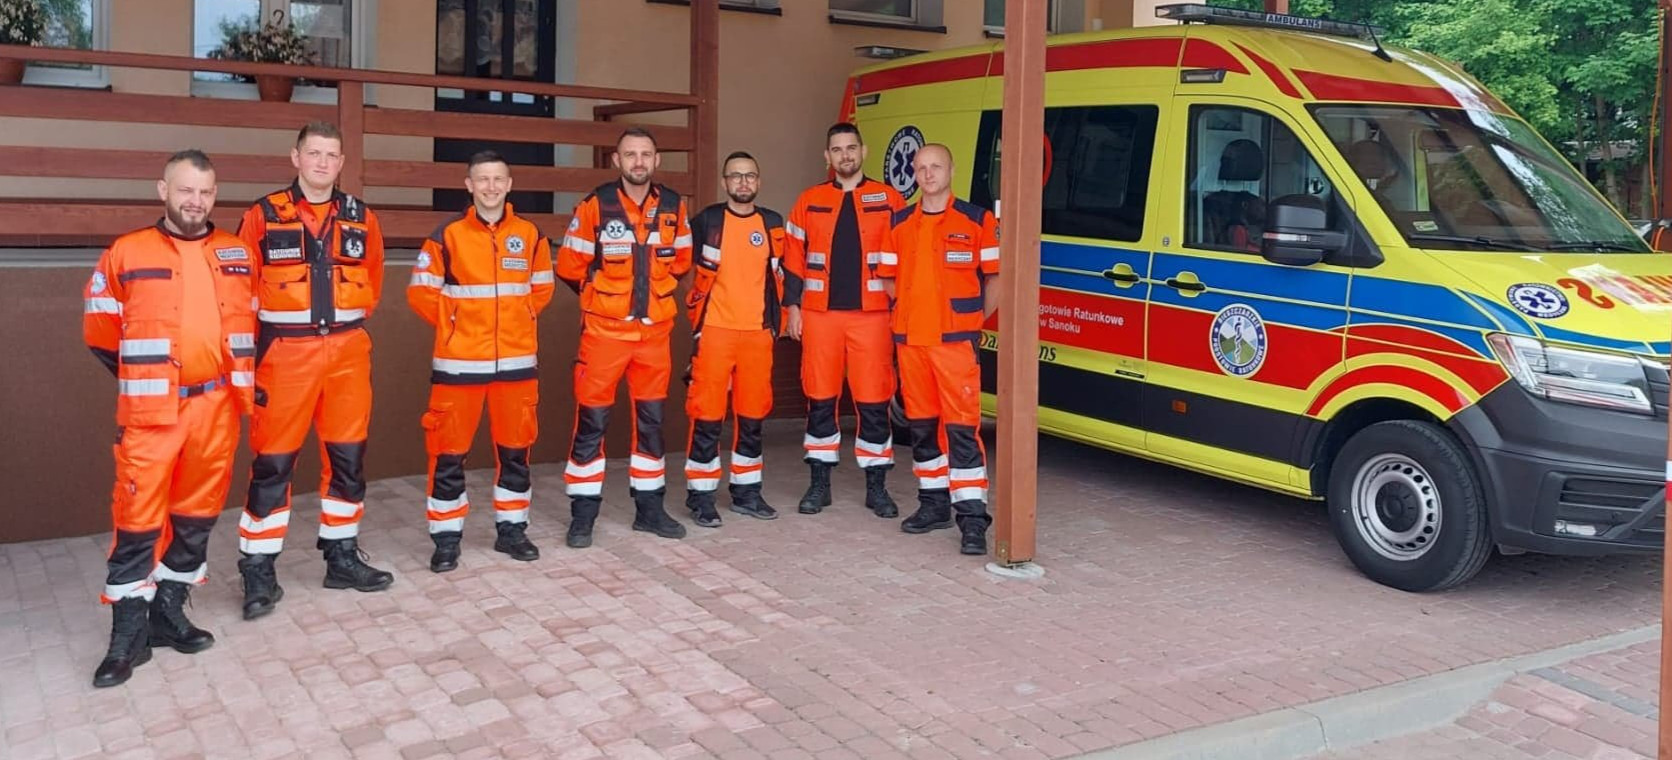 Nowy ambulans trafił do ratowników z Nozdrzca! (ZDJĘCIA)